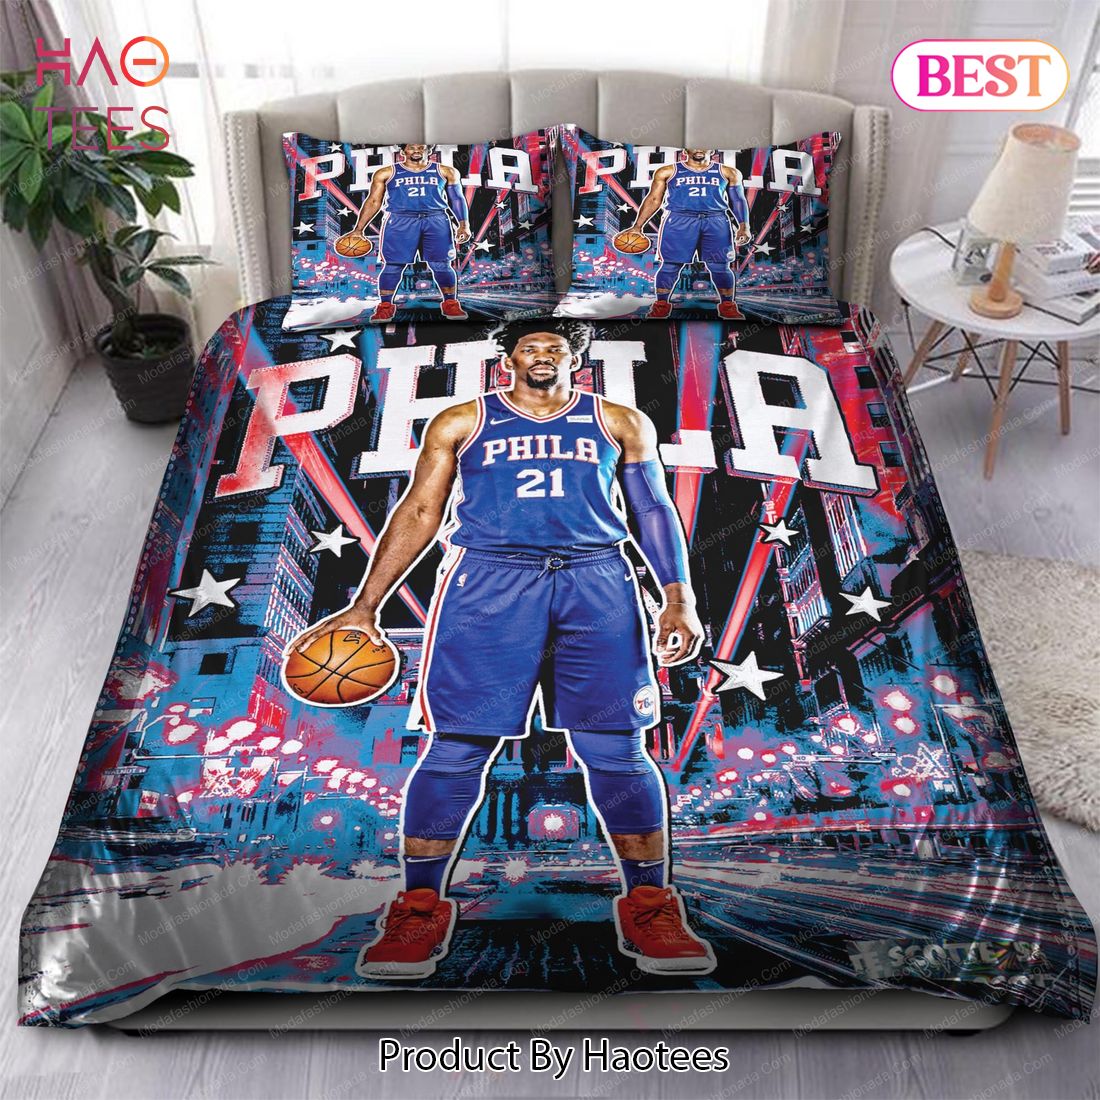 Buy Joel Embiid Philadelphia 76ers NBA 103 Bedding Sets Bed Sets, Bedroom Sets, Comforter Sets, Duvet Cover, Bedspread